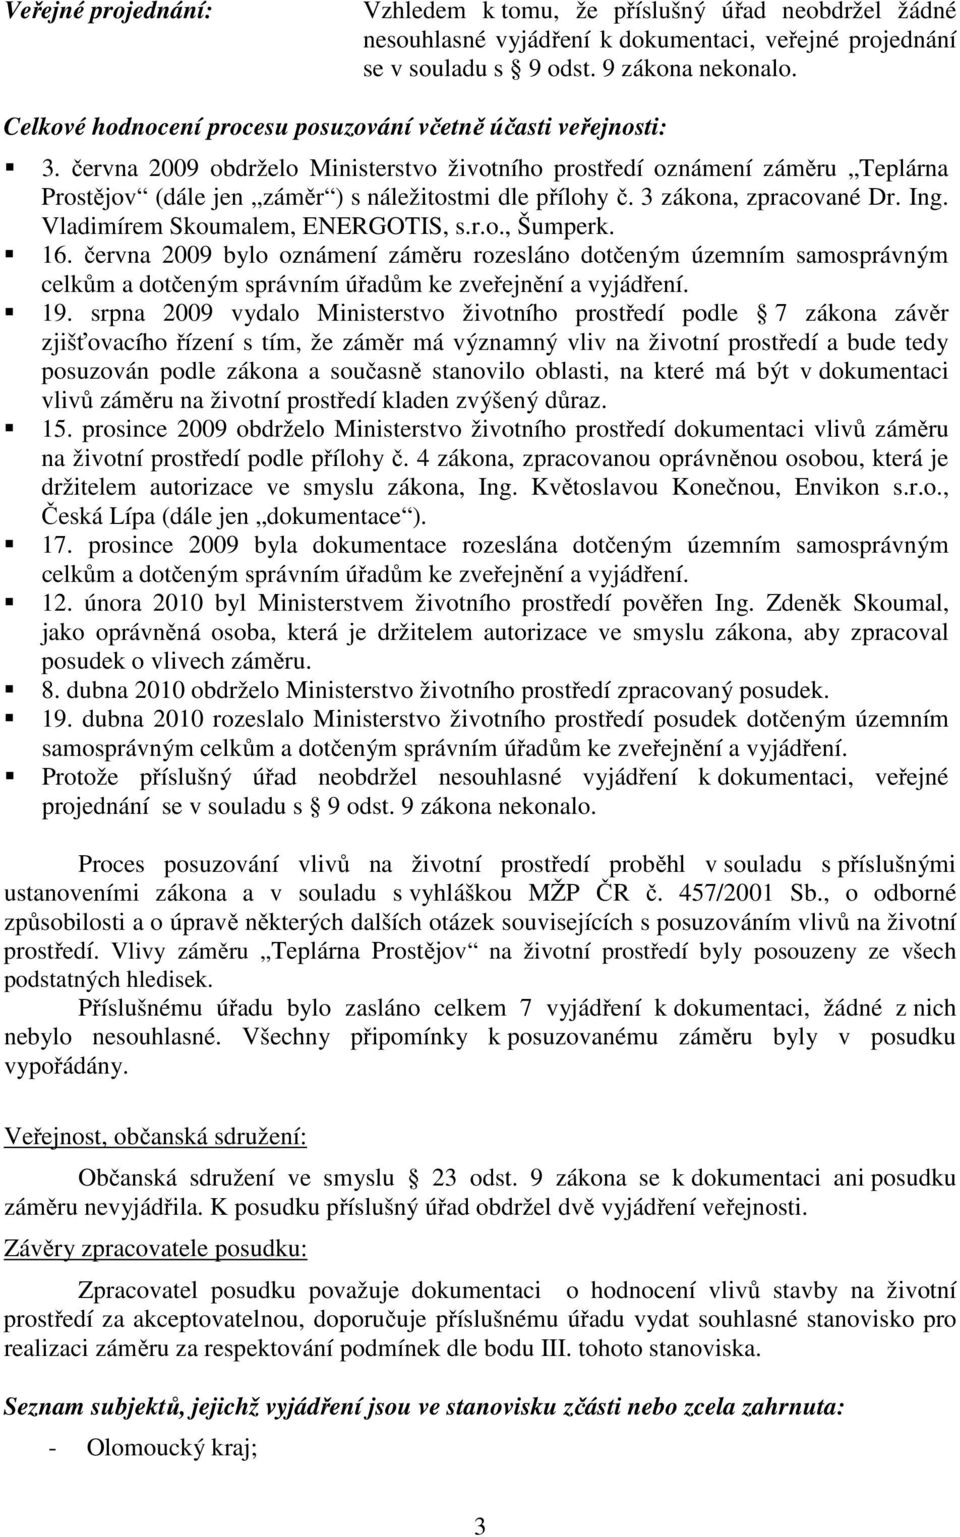 3 zákona, zpracované Dr. Ing. Vladimírem Skoumalem, ENERGOTIS, s.r.o., Šumperk. 16.